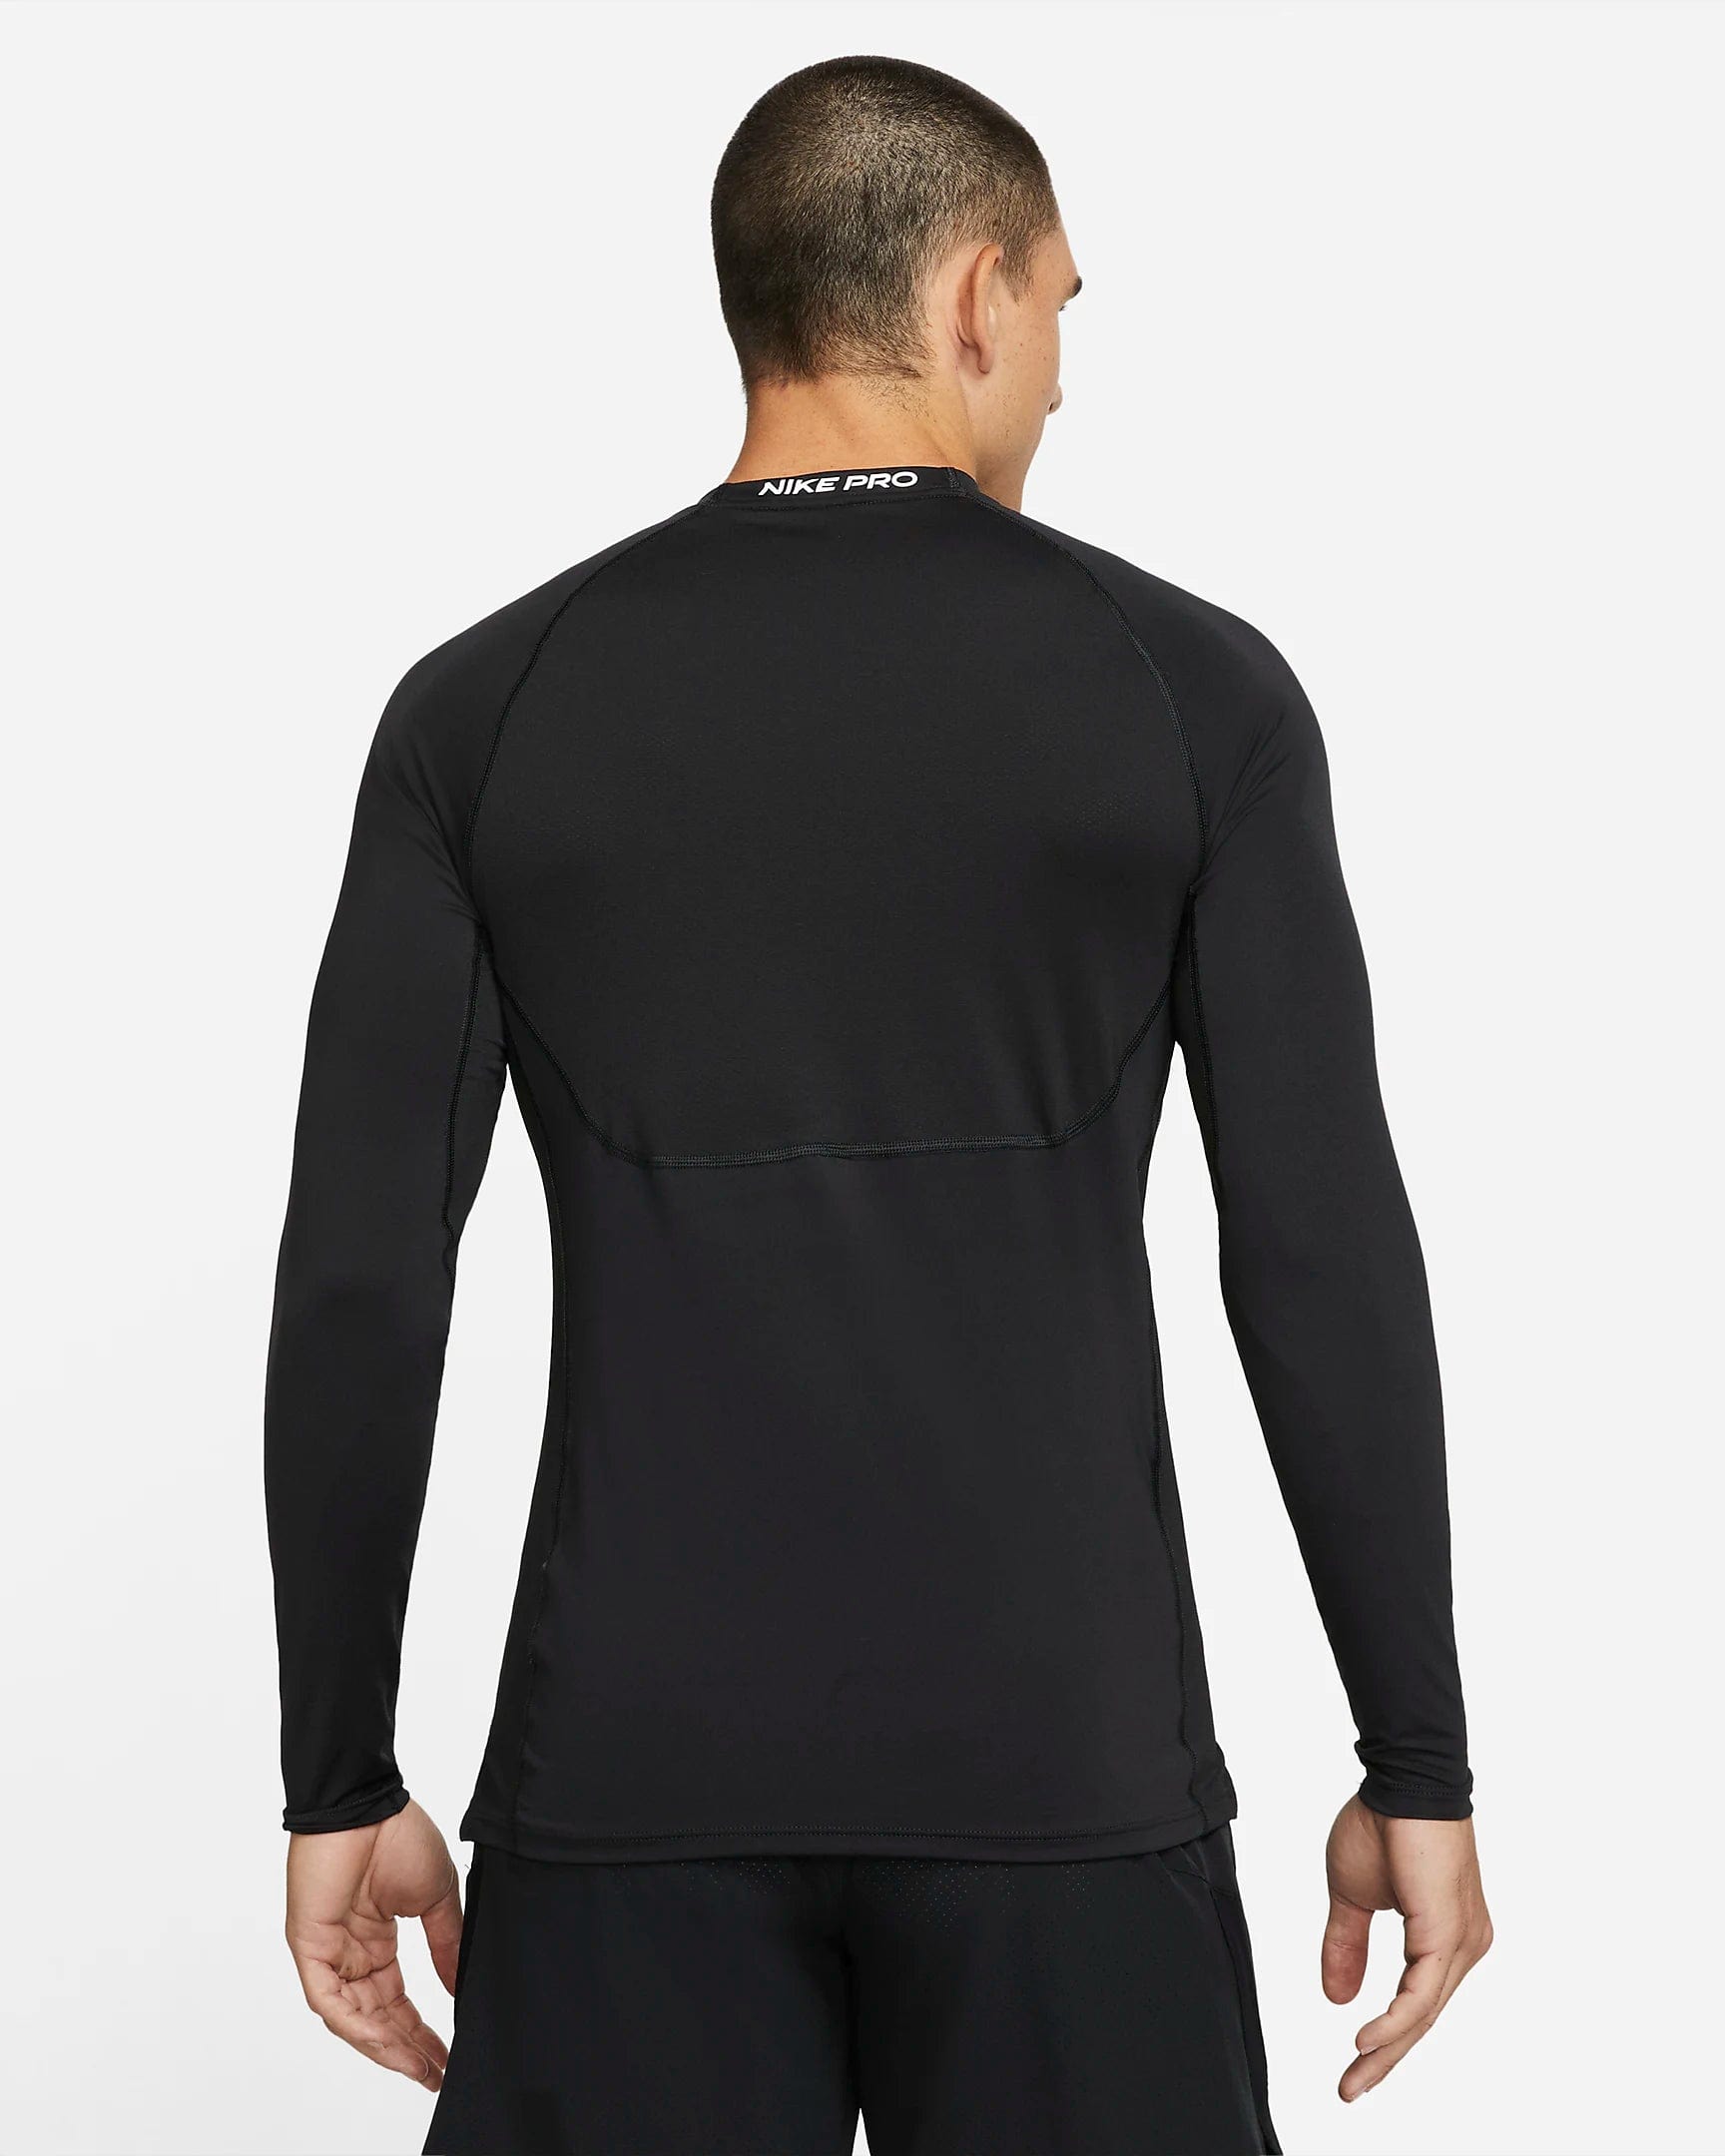 Men's Nike Slip Fit Long Sleeve Tennis Top